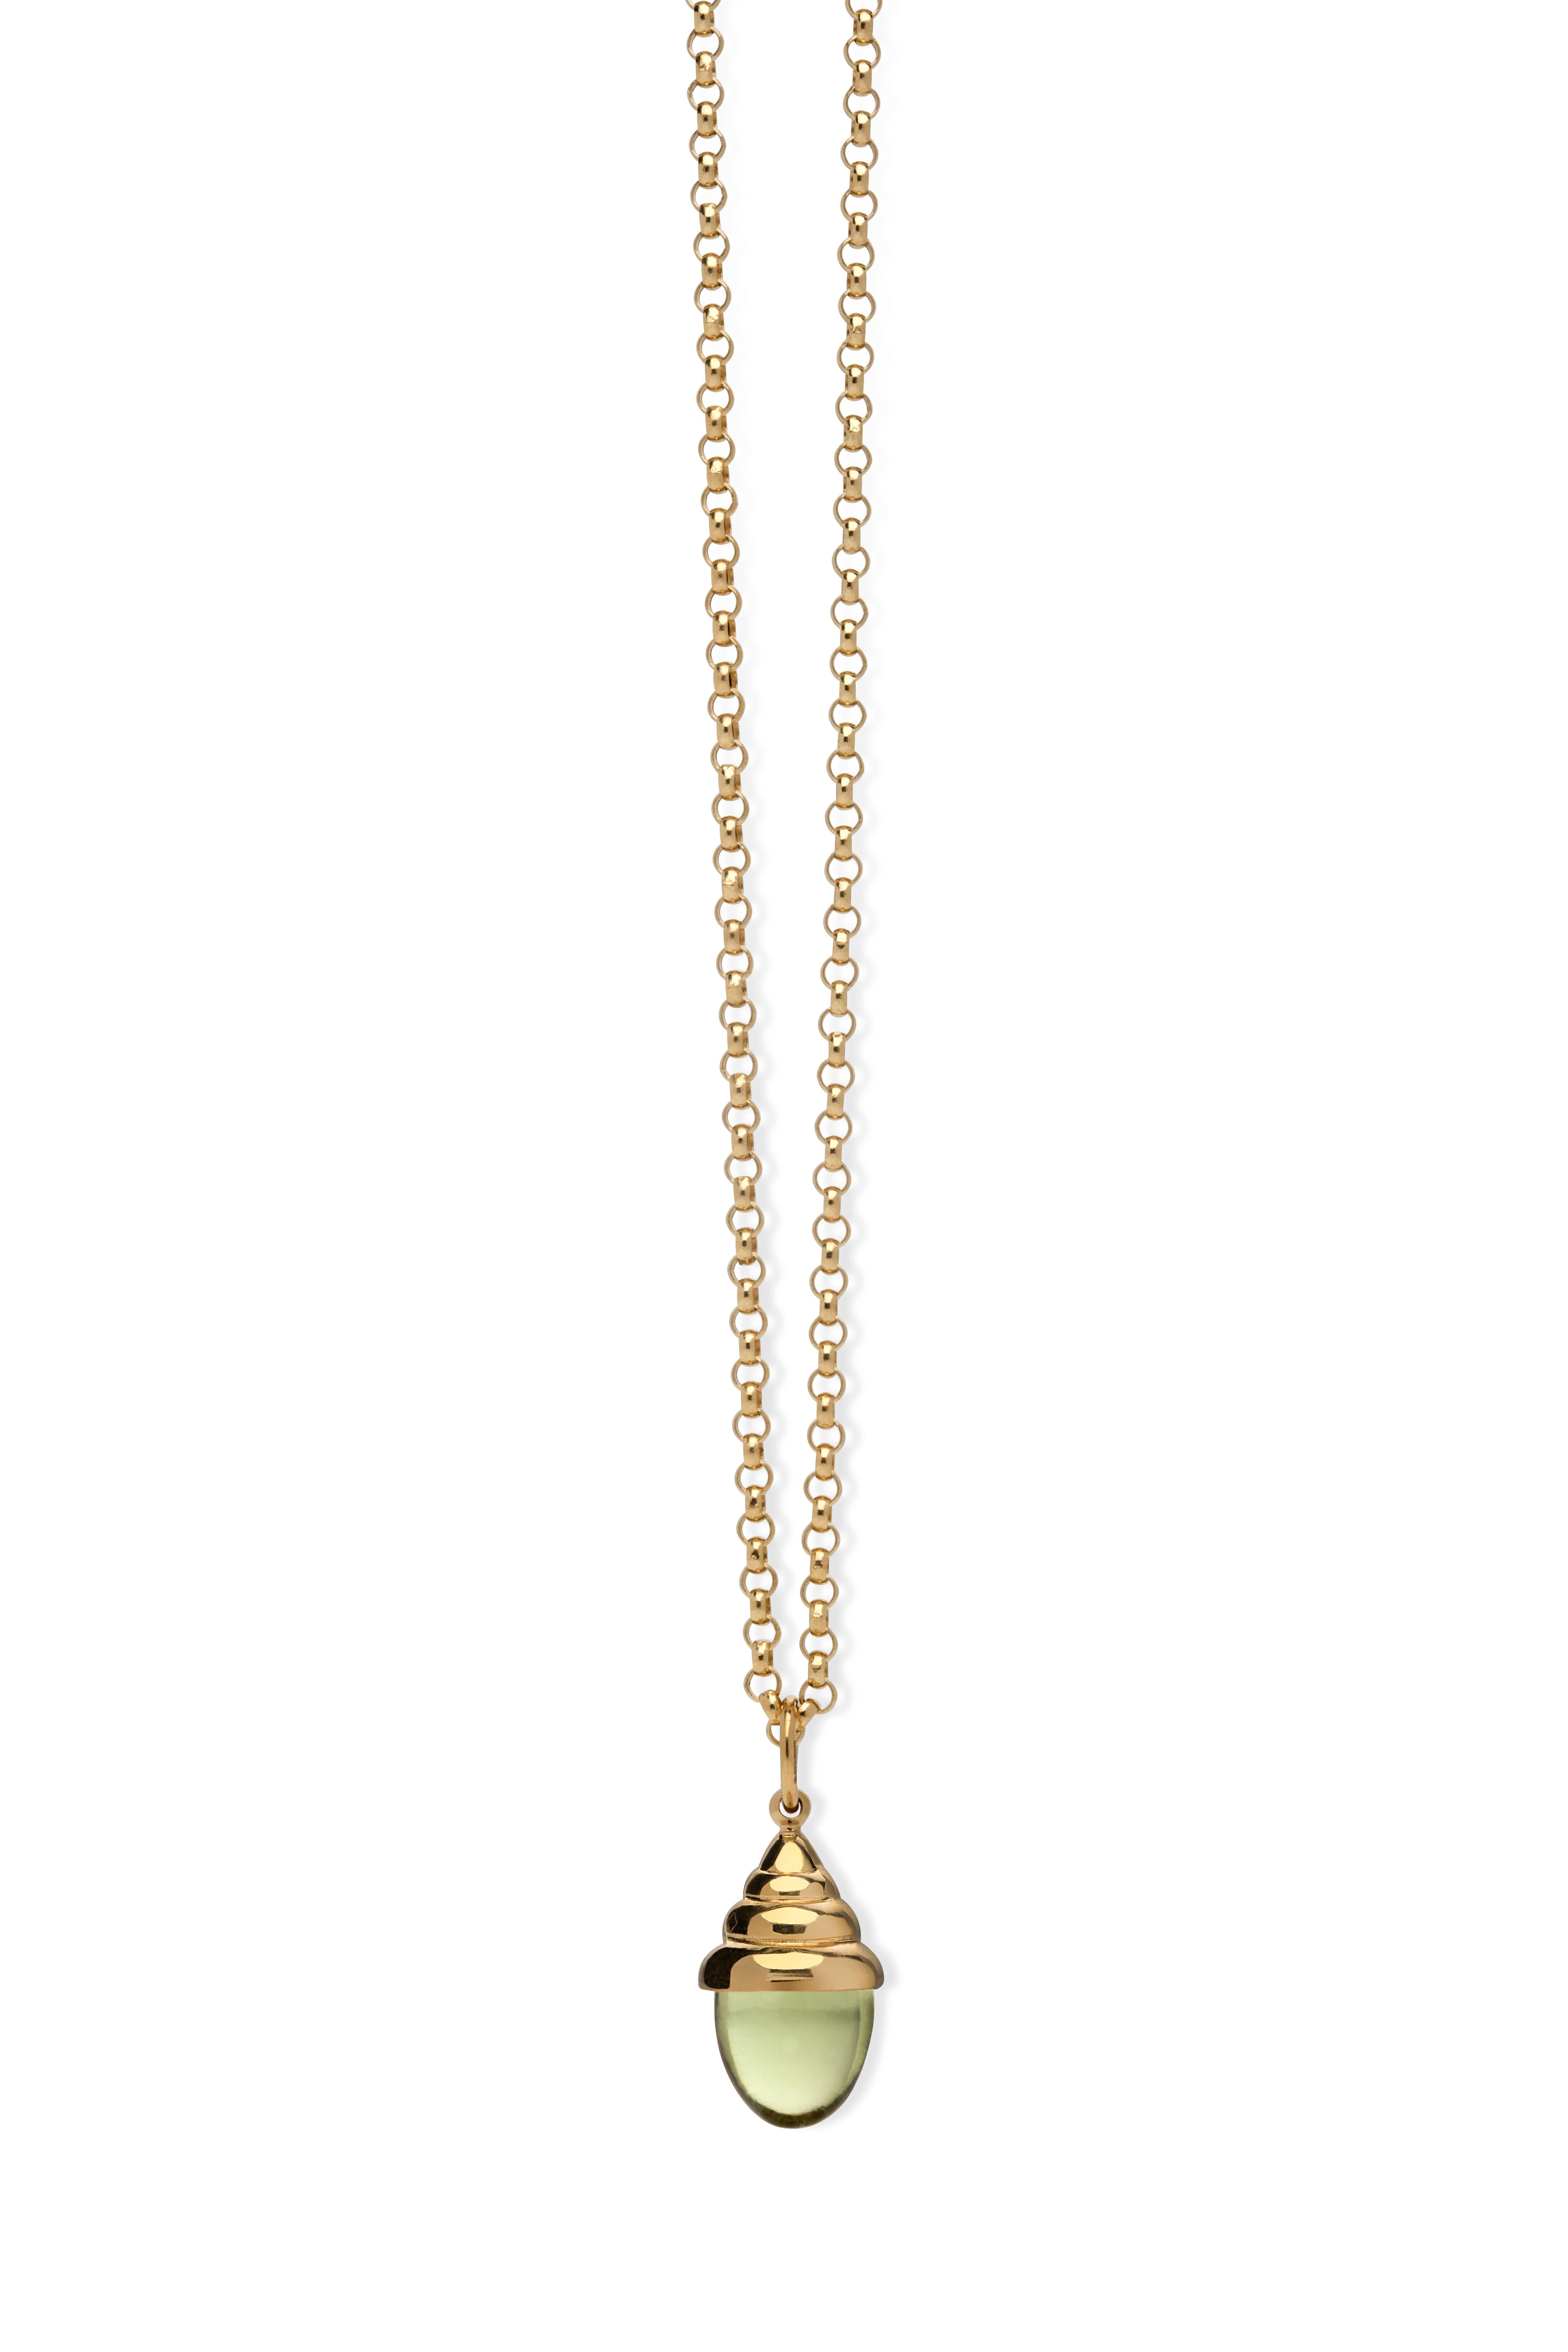 Pink Tourmaline Classic Quartz 18 Karat Yellow Solid Gold Drop Pendant Necklace For Sale 3